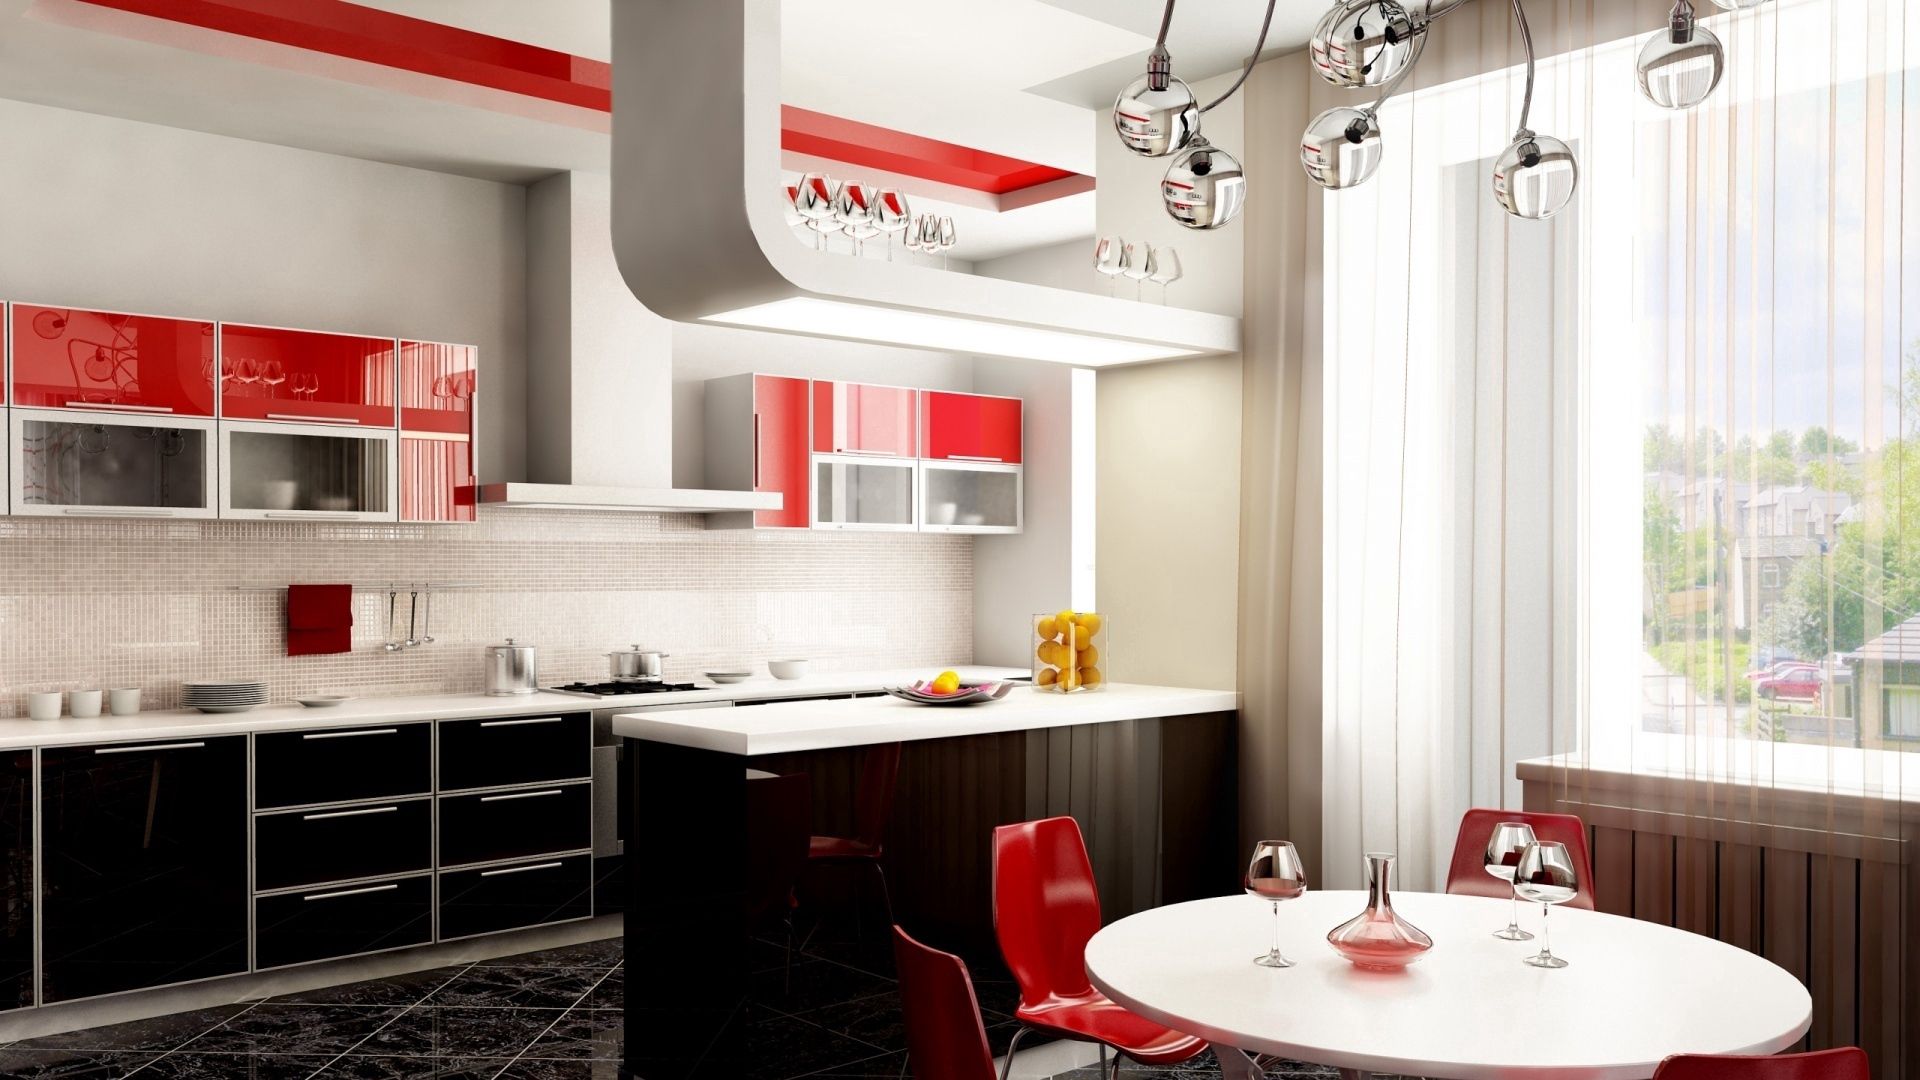 Кухня какая лучше фирма. Интерьер кухни. Красивые современные кухни. Красно-черная кухня в интерьере. Красивые кухни в квартирах.